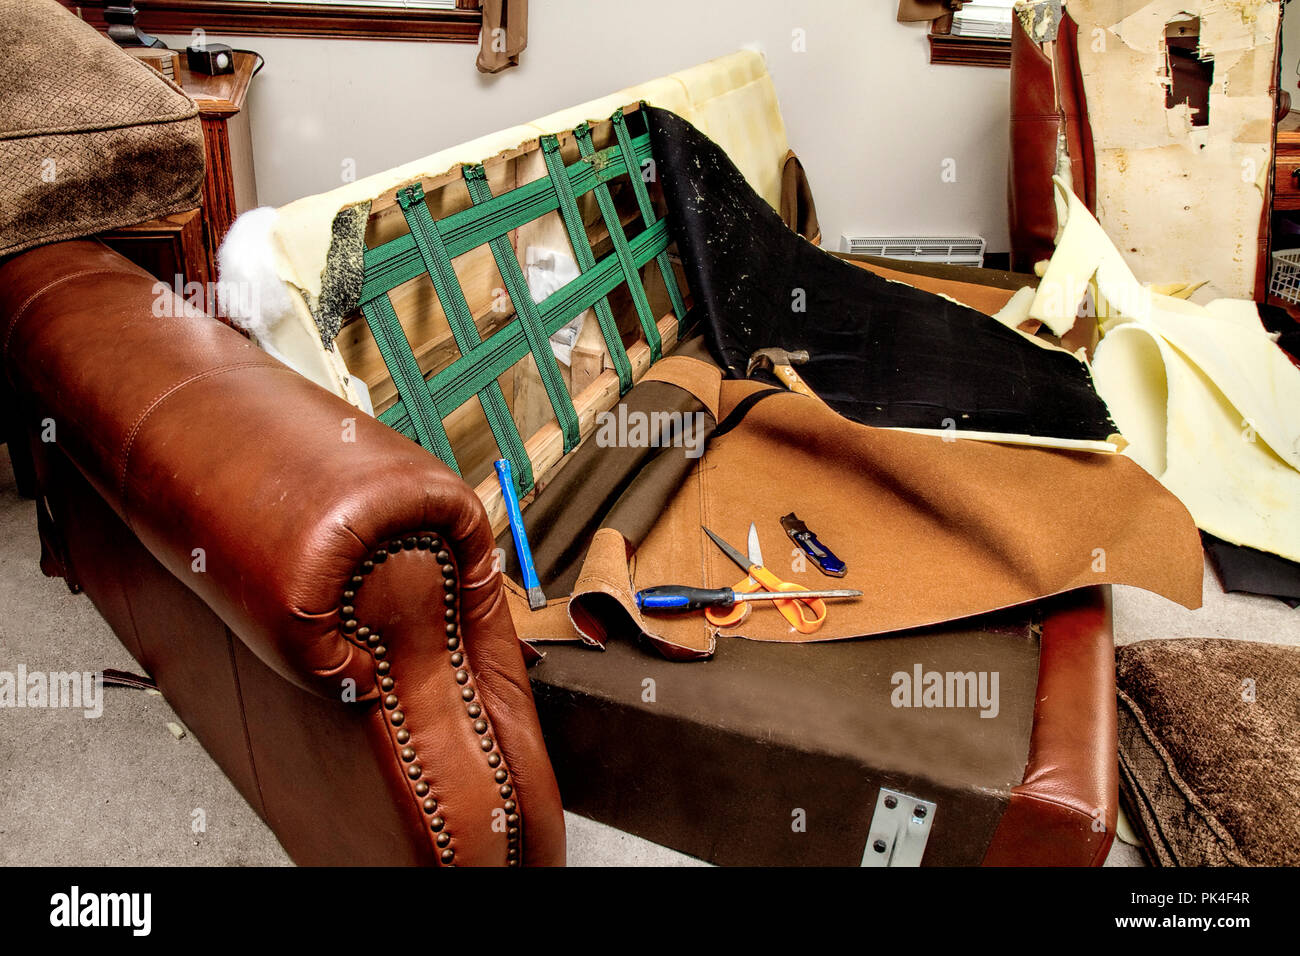 Restoration of sofa torn apart..  Reupholstering Furniture. Stock Photo